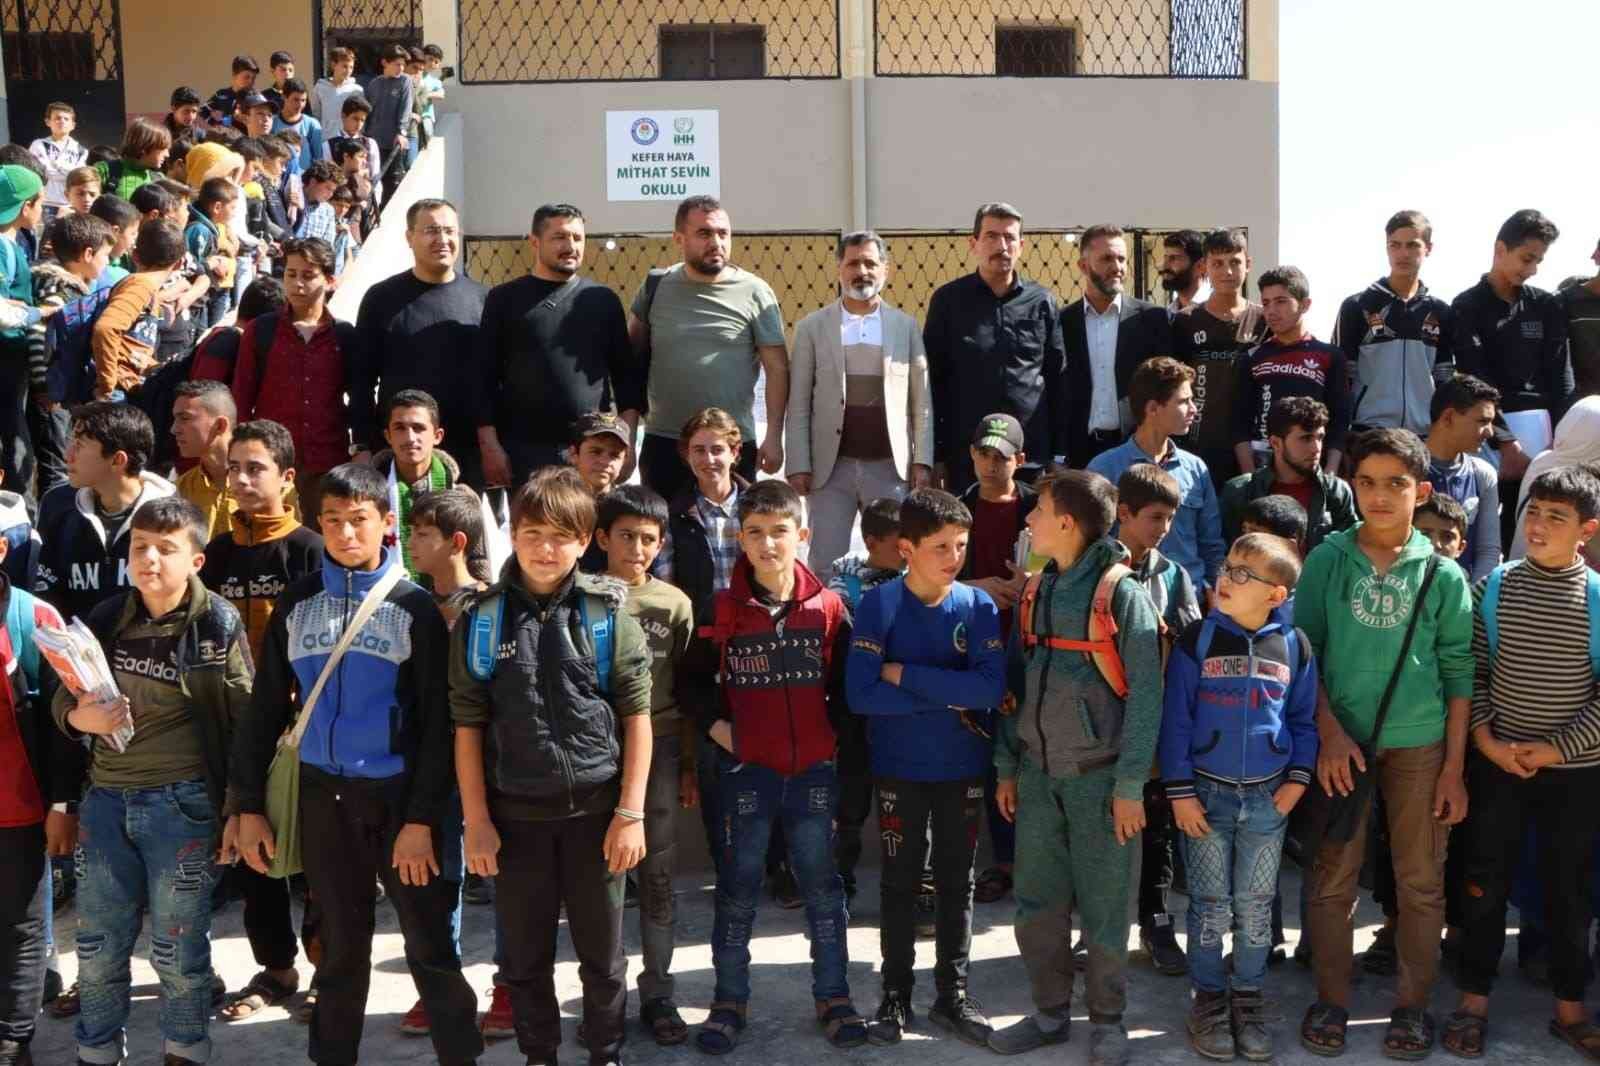 Manisa’dan Türkmen Dağı’nda eğitime destek #manisa